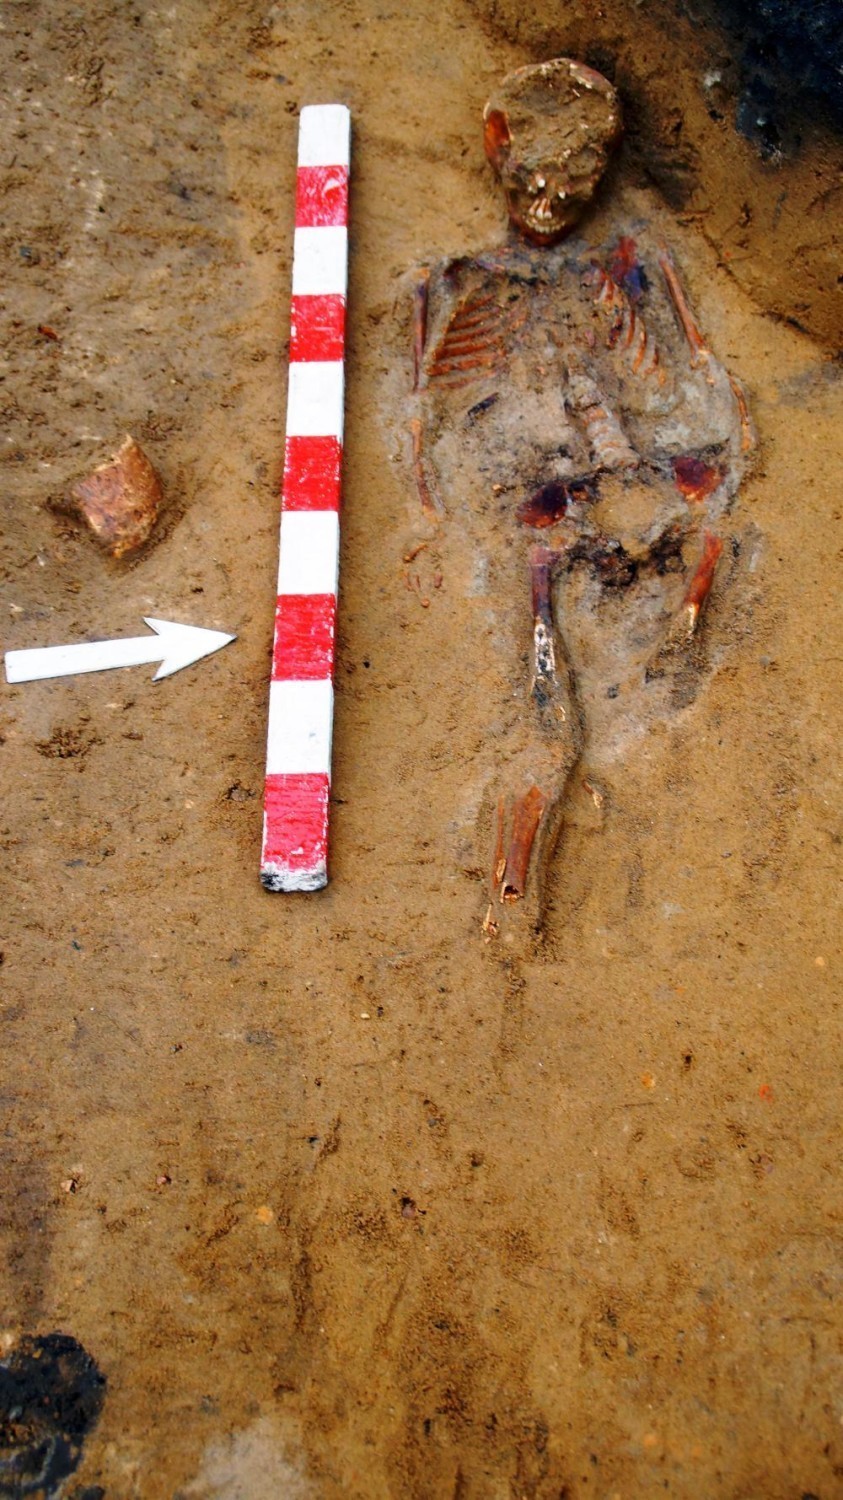 W Podaninie spoczywają szczątki dawnych mieszkańców Chodzieży, wydobyte przez archeologa przy I LO